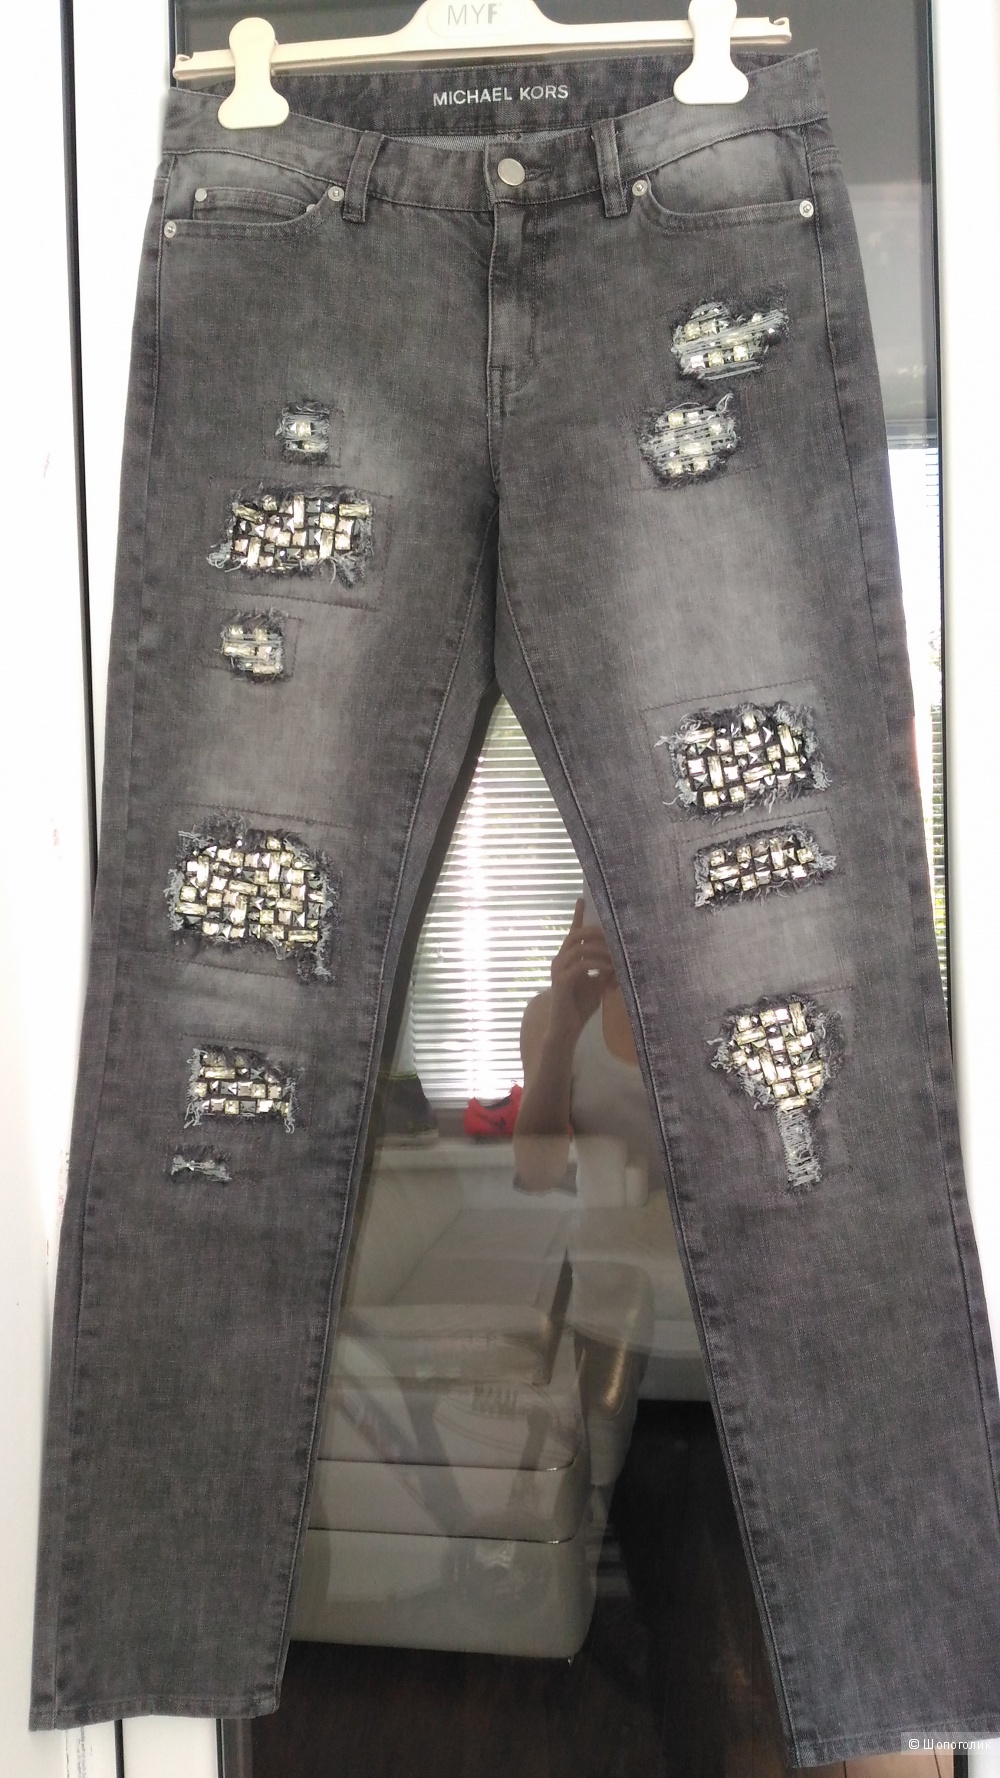 Джинсовые брюки Michael Kors с камнями, размер 2 (26)